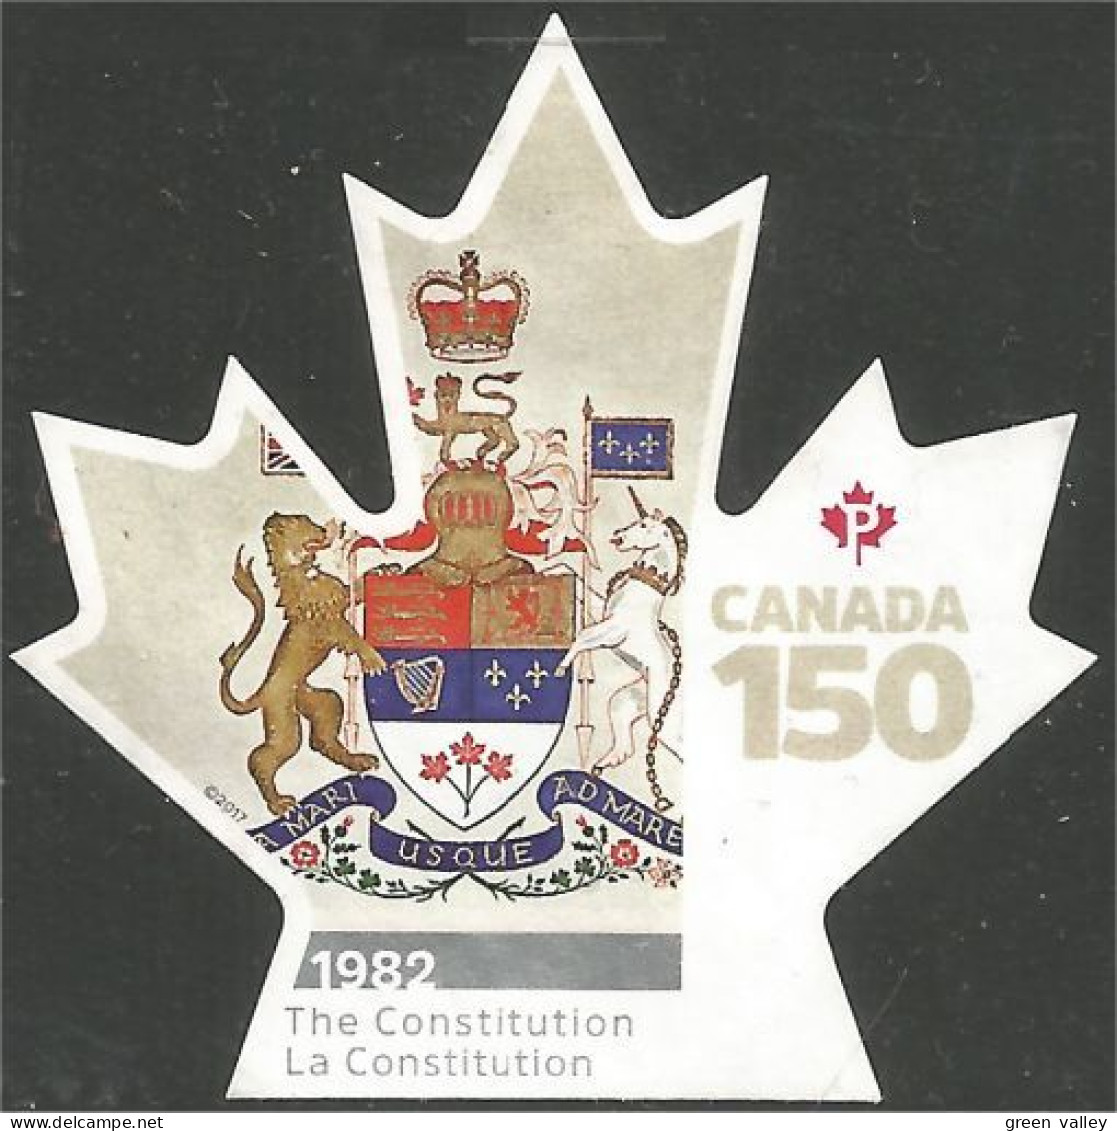 Canada 150 Feuille Erable Maple Leaf Coat Arms Mint No Gum (150) - Francobolli